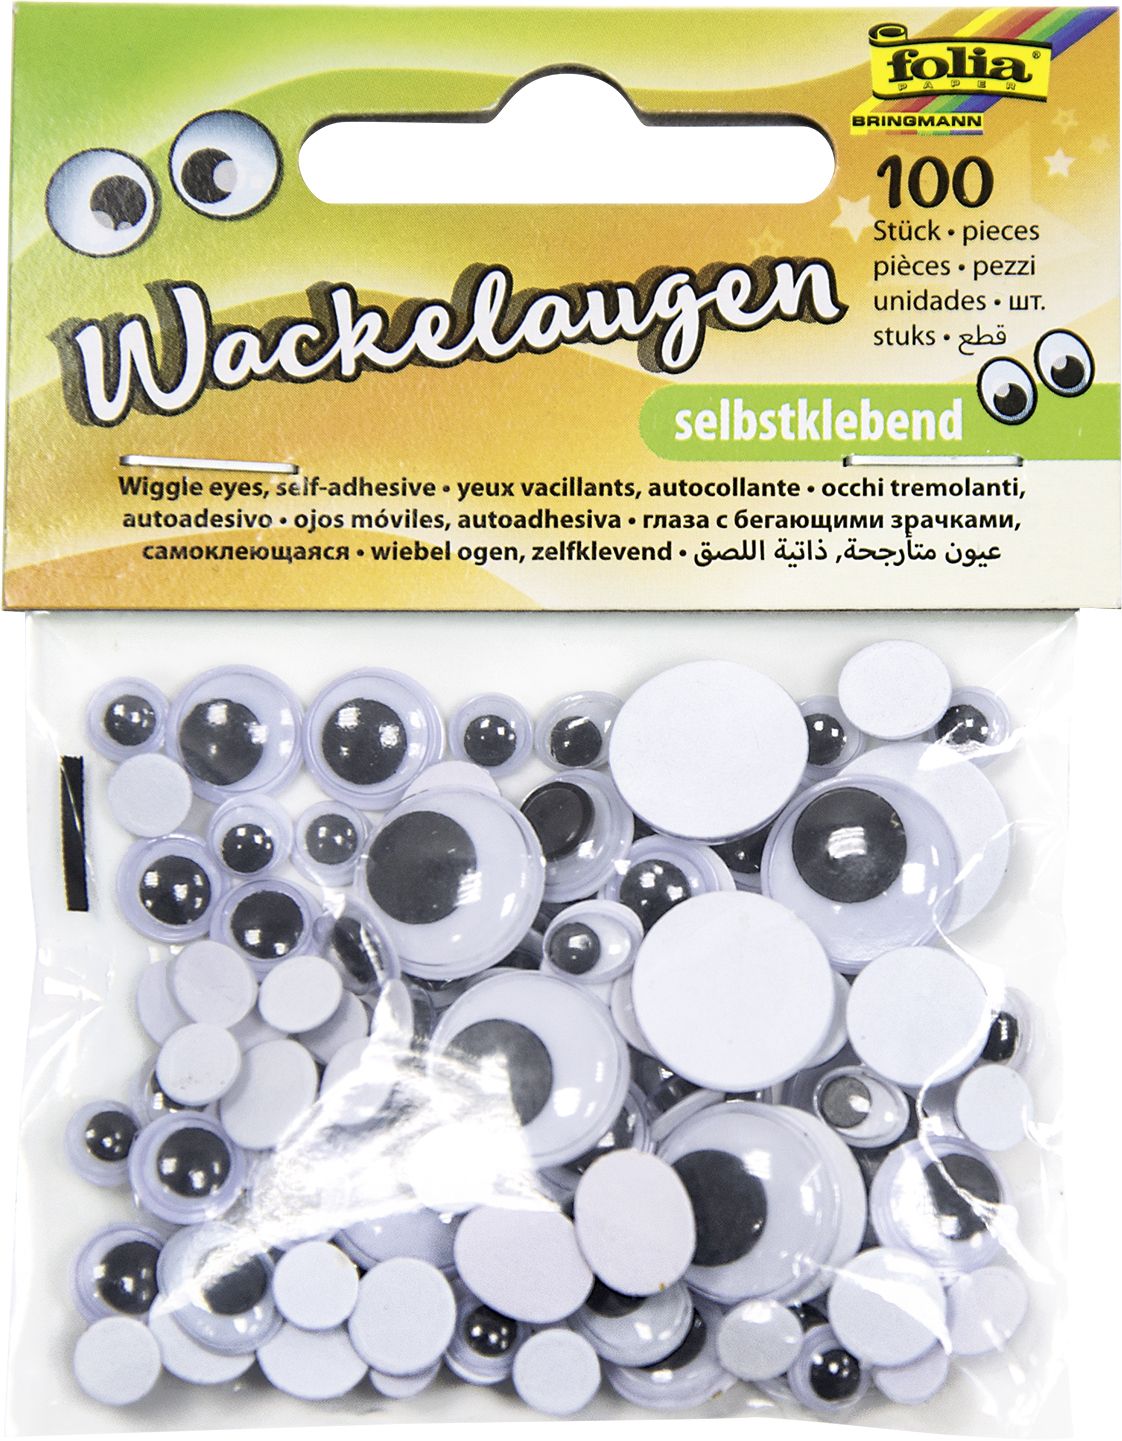 Wackelaugen - 100 Stück